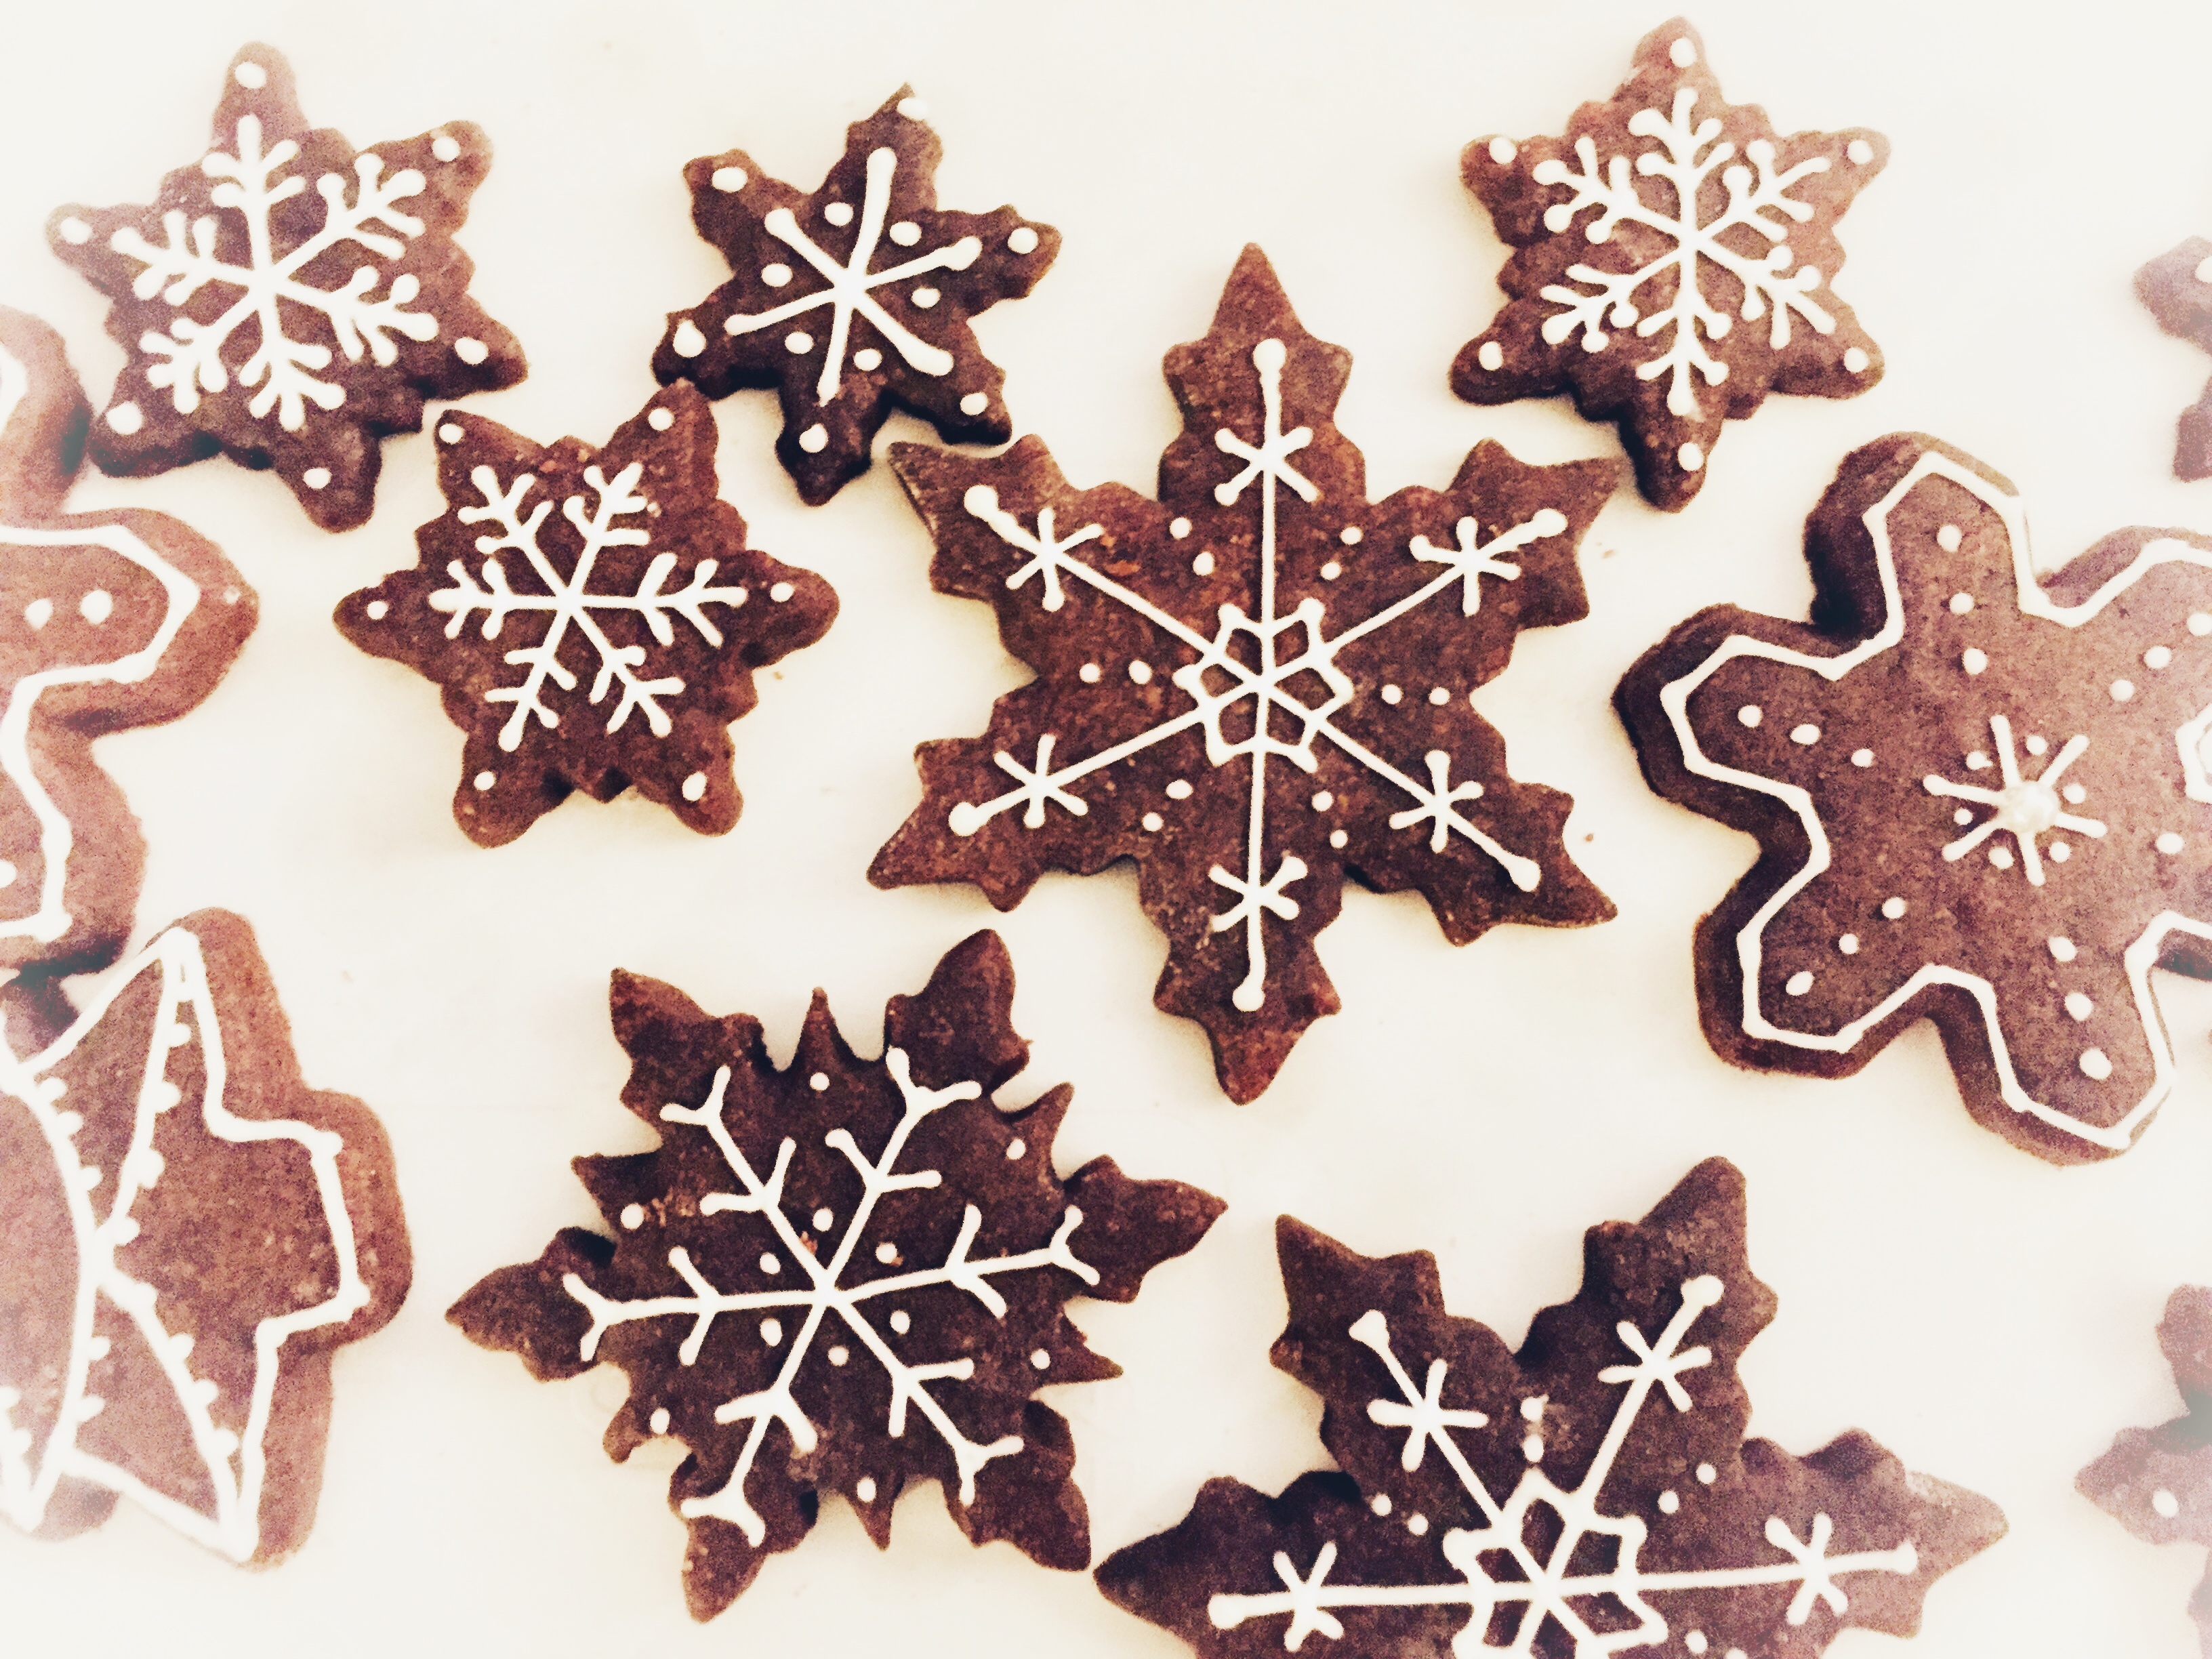 Biscotti Di Natale Decorati Con Ghiaccia Reale.Biscotti Di Natale Sablee Al Cacao Decorati Con Ghiaccia Reale Master Of Cakes